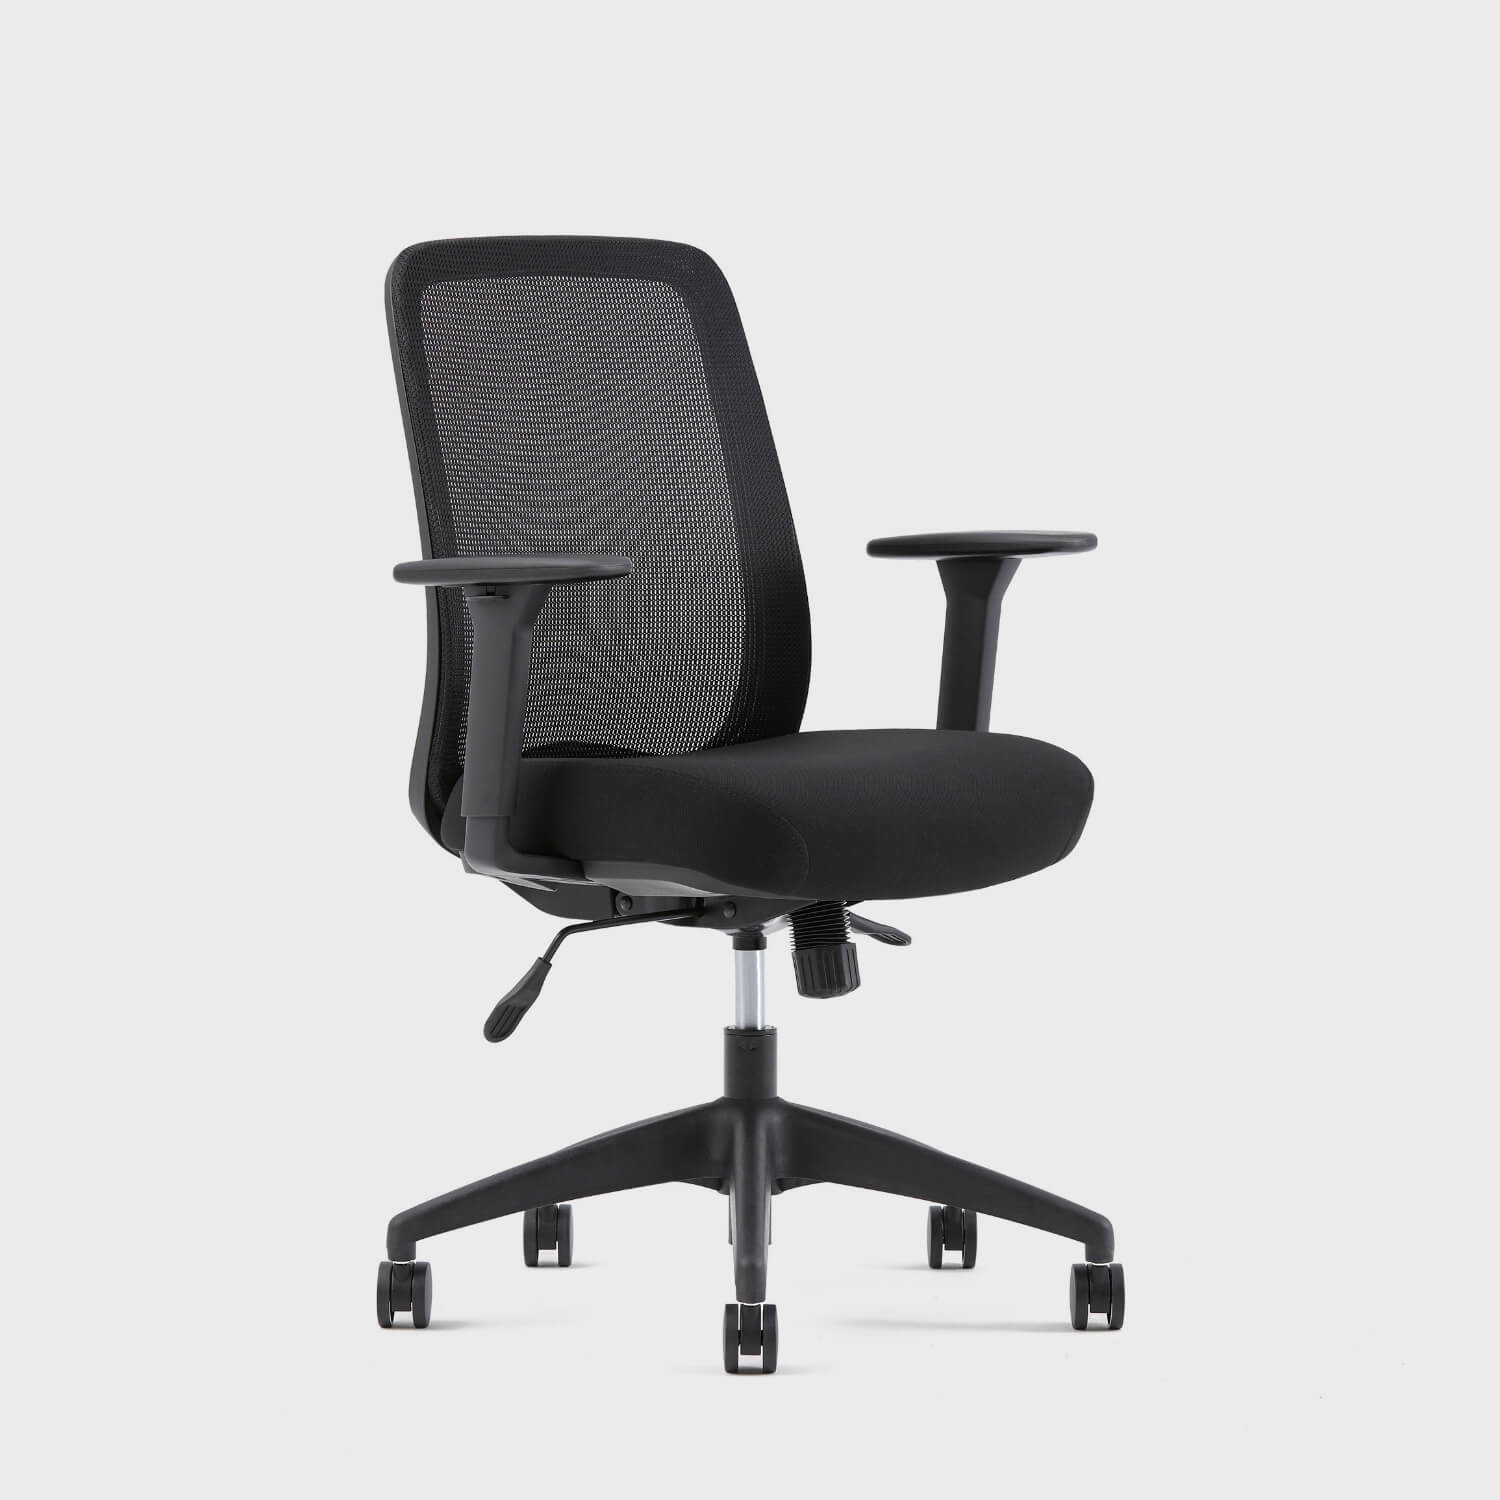 Assure Office Chair